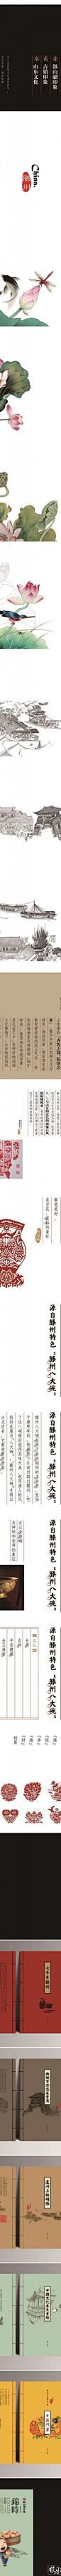 创意中国风品牌形象设计 民间剪纸风格品牌设计 工笔画风格海报设计 创意海报版式分享